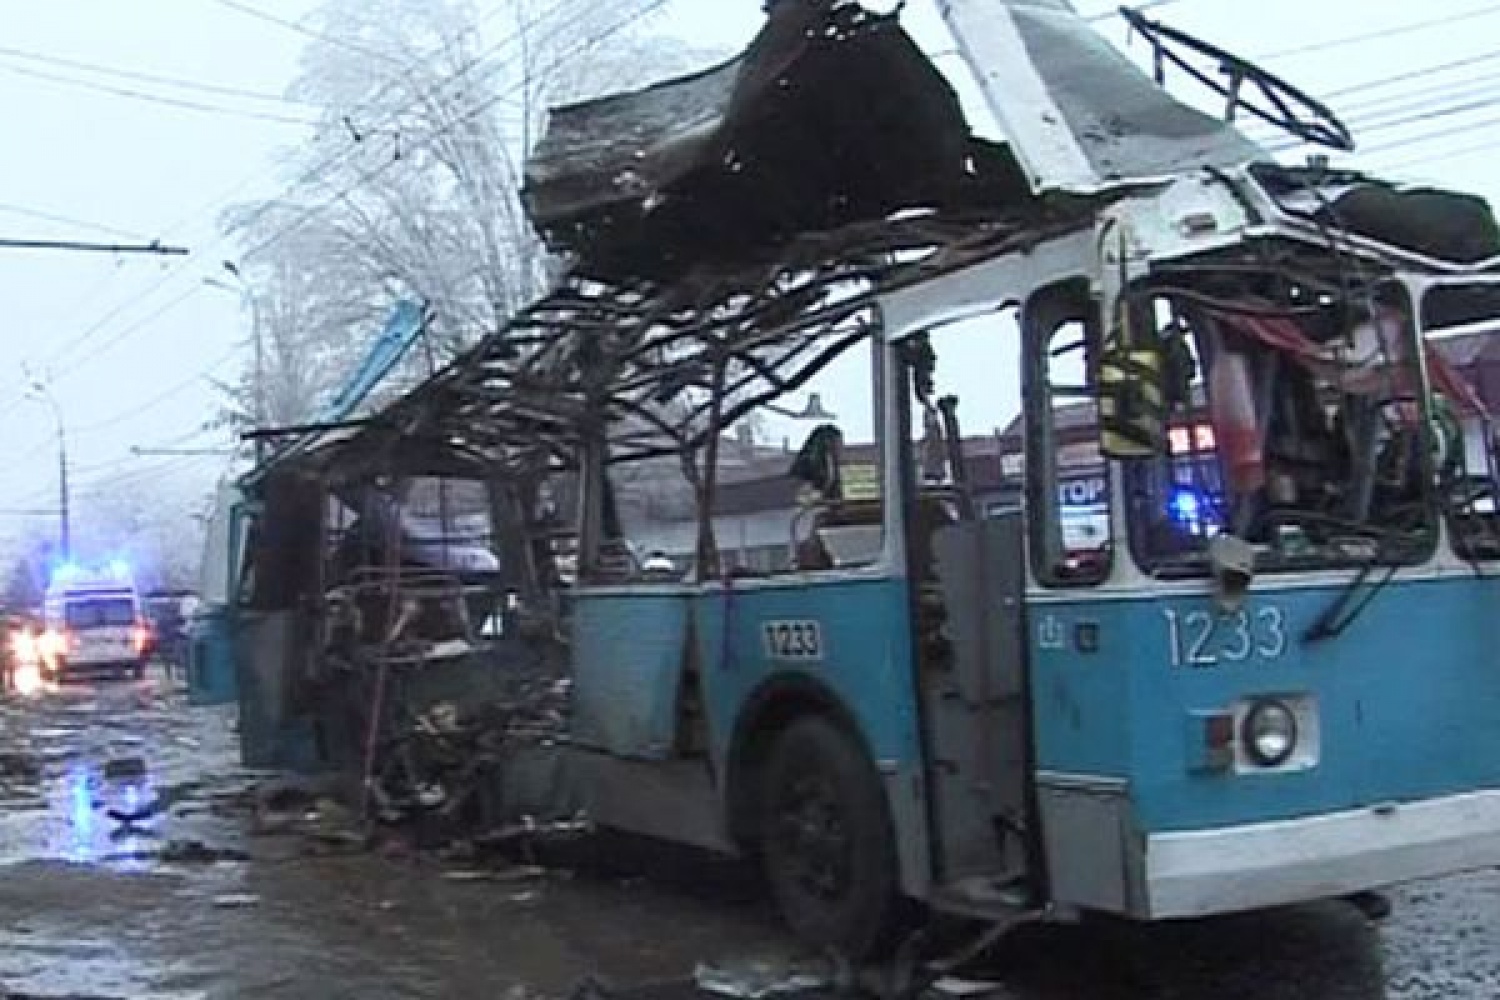 Теракт в новосибирске сегодня. 30 Декабря 2013 год Волгоград взрыв троллейбуса. Взорванный троллейбус в Волгограде. Теракт 30 декабря в Волгограде. Взрыв троллейбуса в Волгограде.